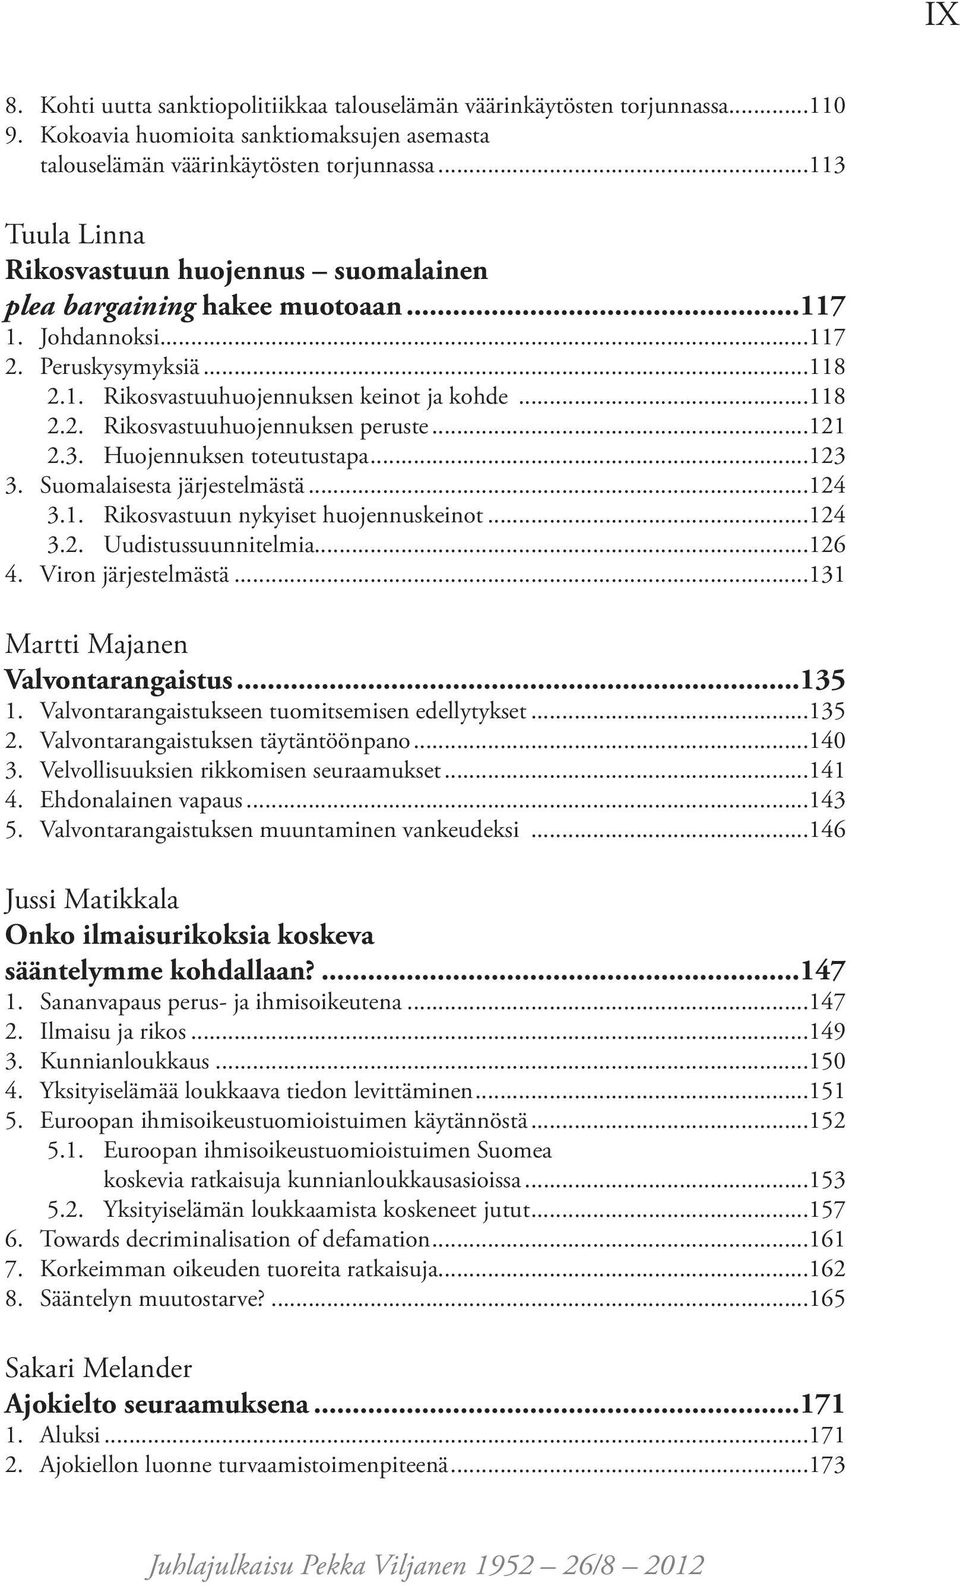 ..121 2.3. Huojennuksen toteutustapa...123 3. Suomalaisesta järjestelmästä...124 3.1. Rikosvastuun nykyiset huojennuskeinot...124 3.2. Uudistussuunnitelmia...126 4. Viron järjestelmästä.